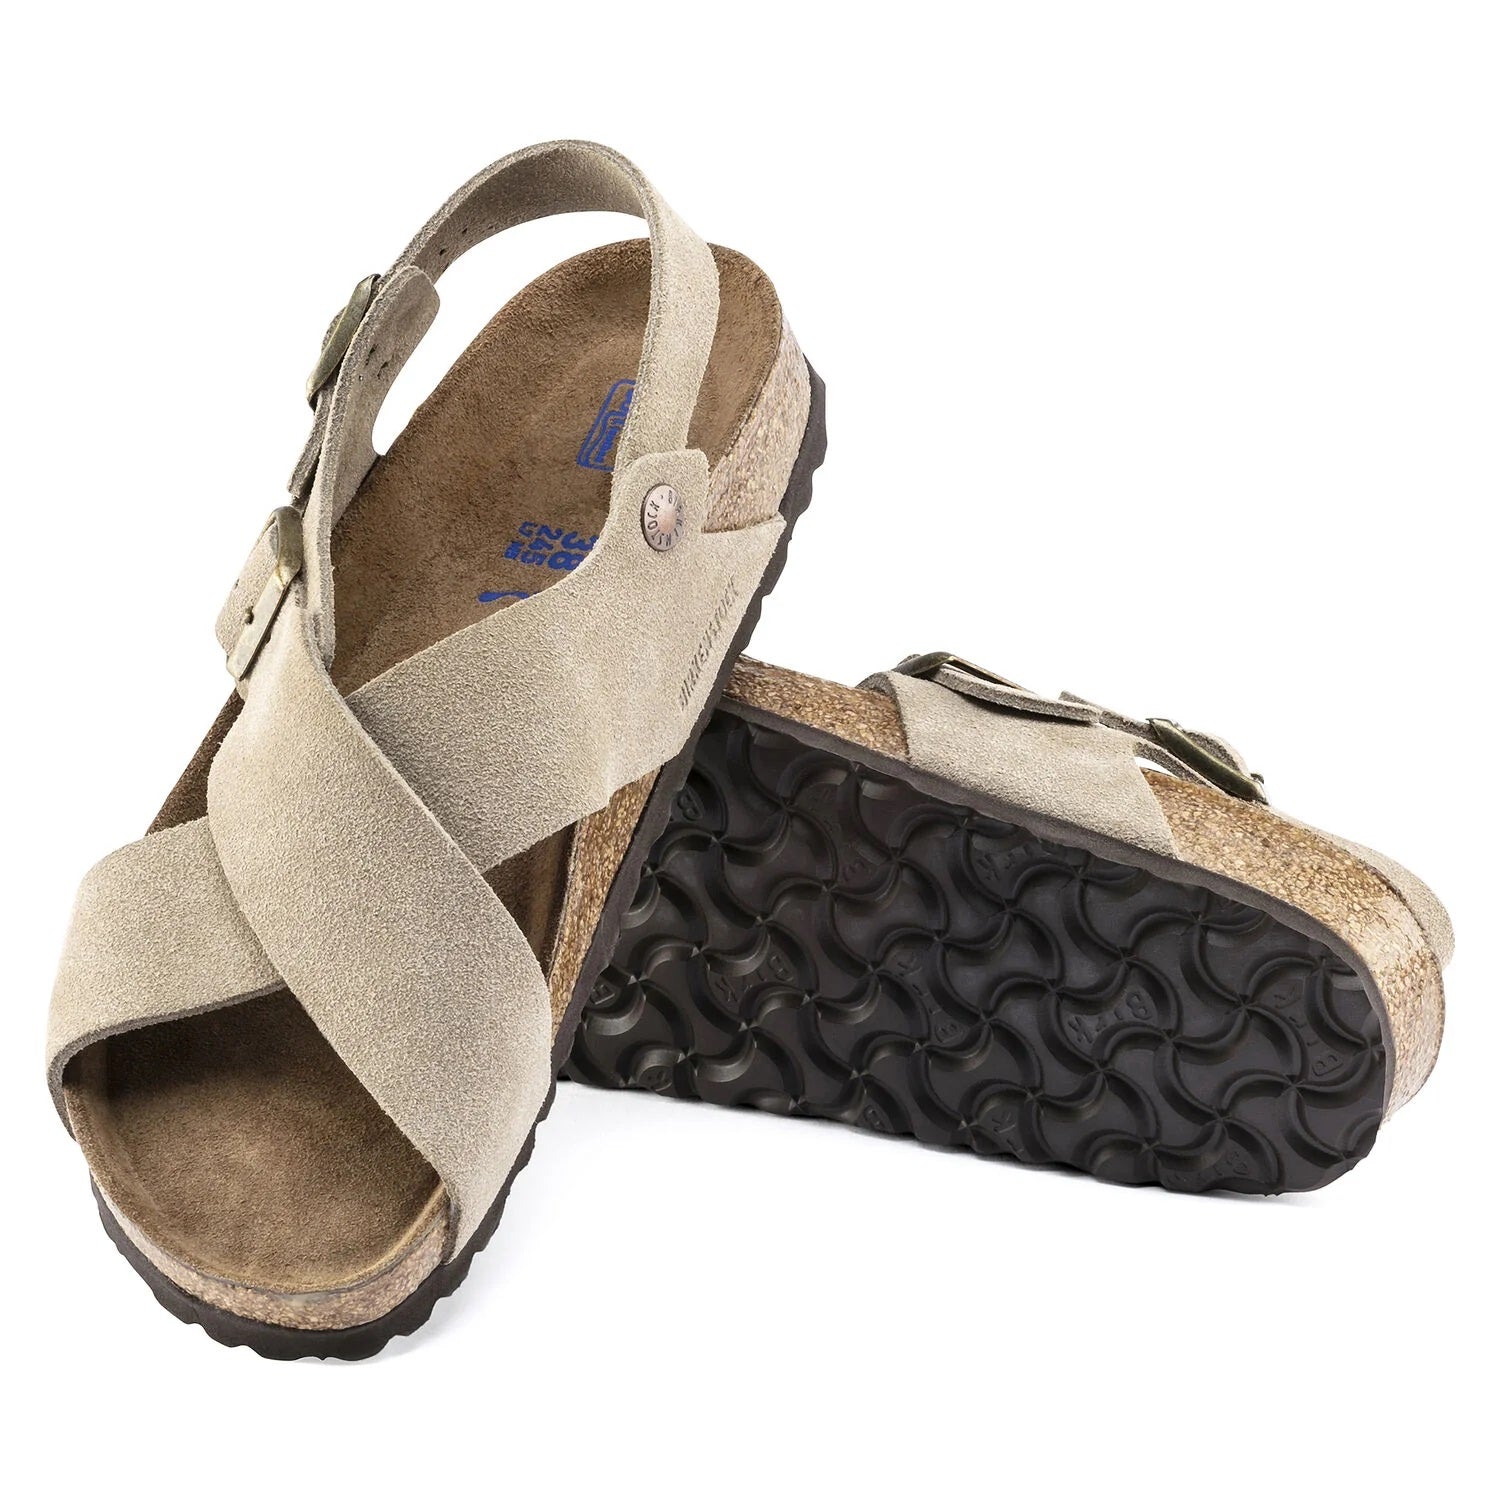 Birkenstock Tulum - woman's Sandals - Taupe suede - Chaplinshoes